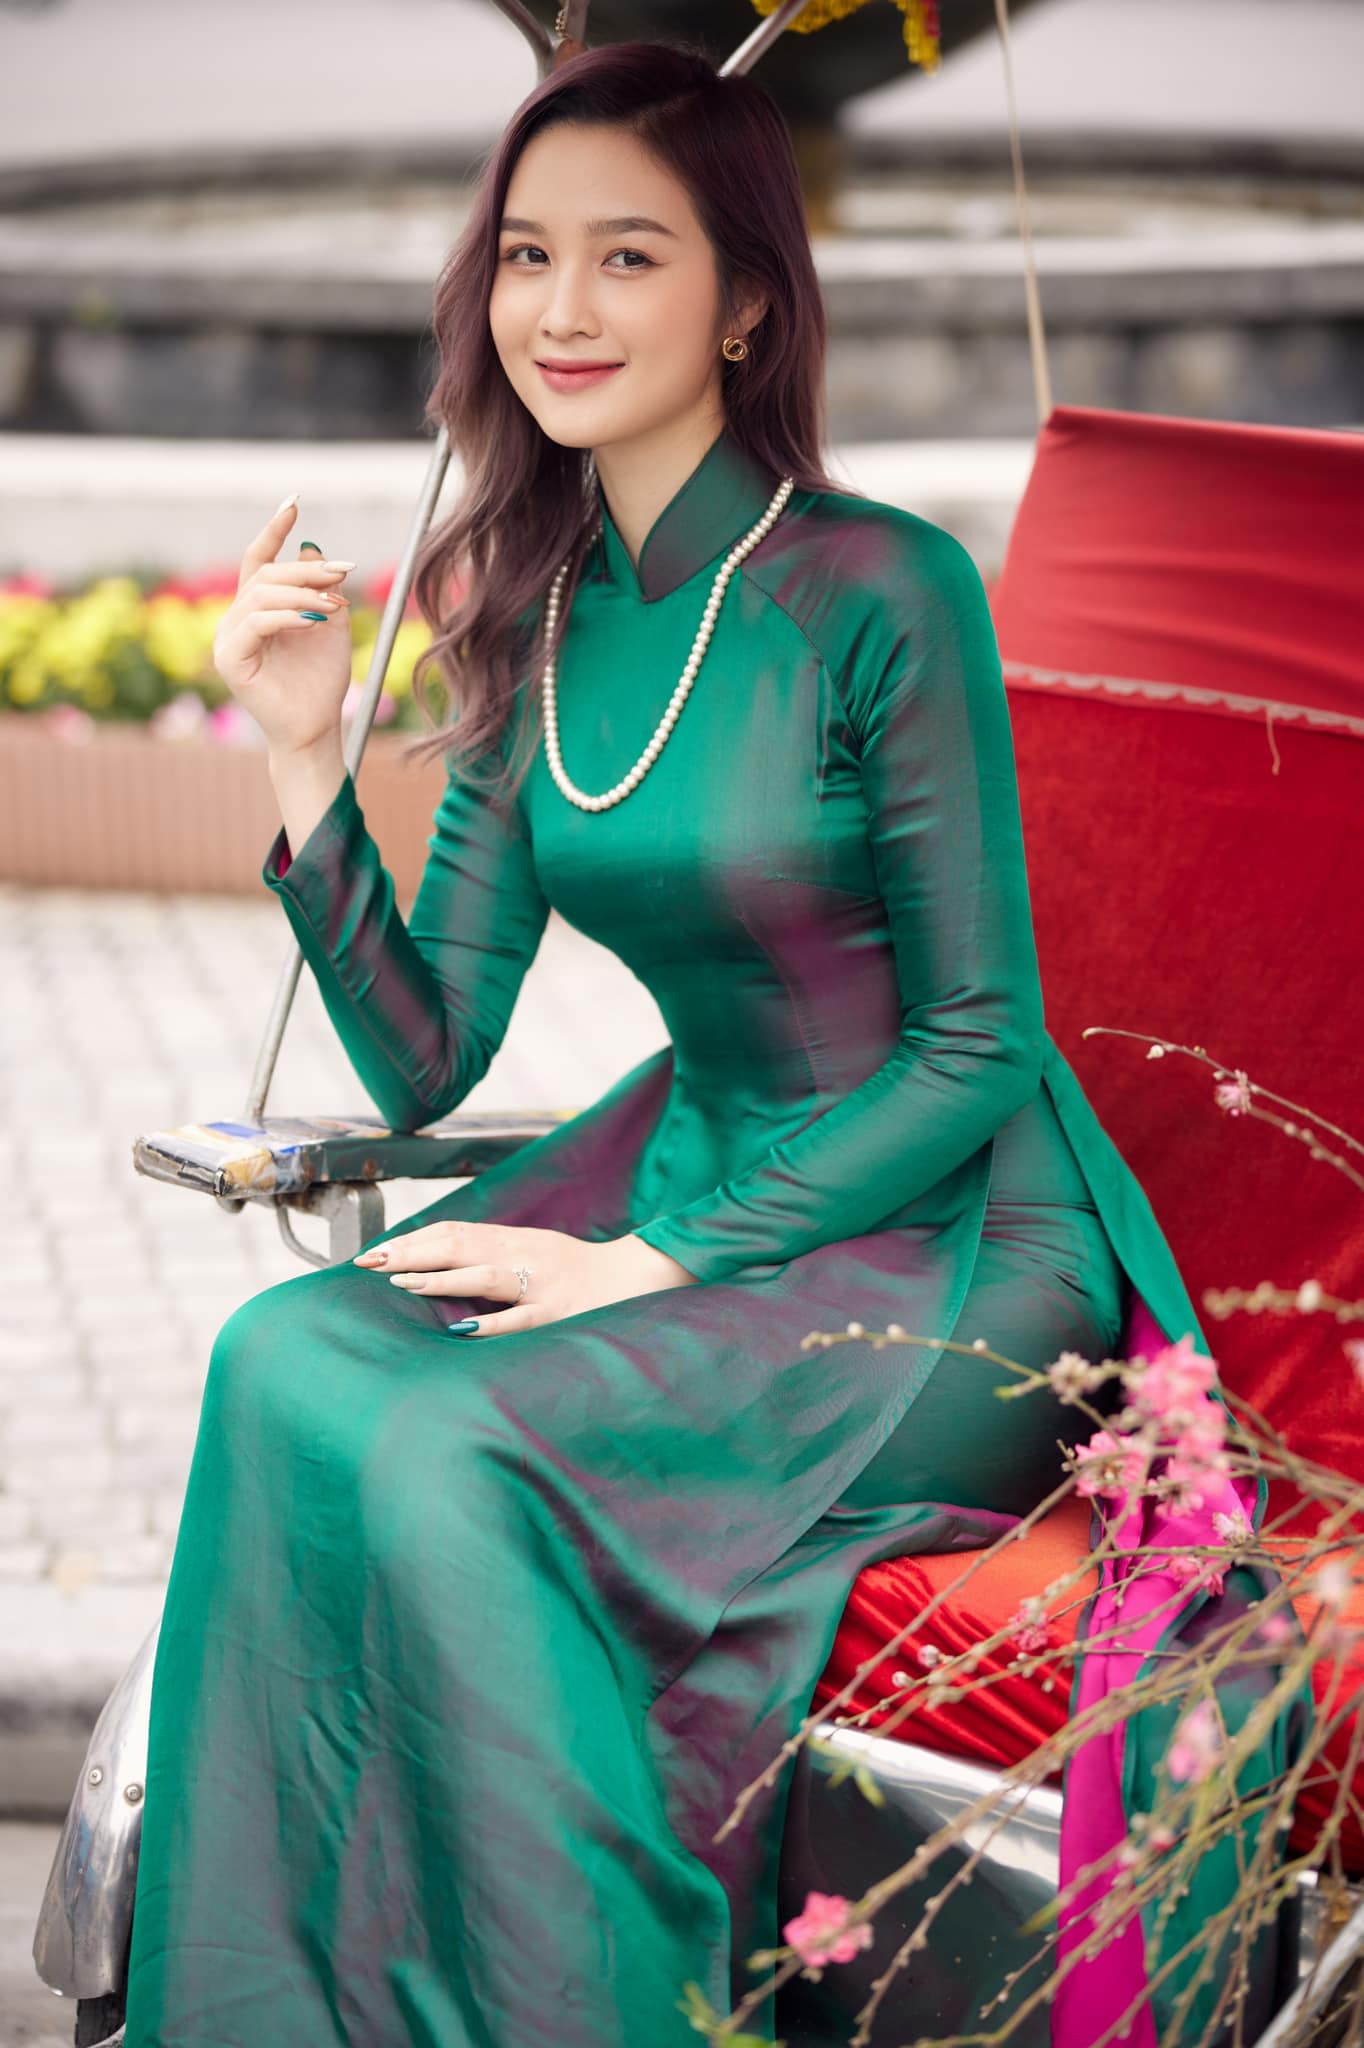 Hoa khôi Đại học Quốc gia Hà Nội duyên dáng với áo dài đón xuân - Ảnh 5.